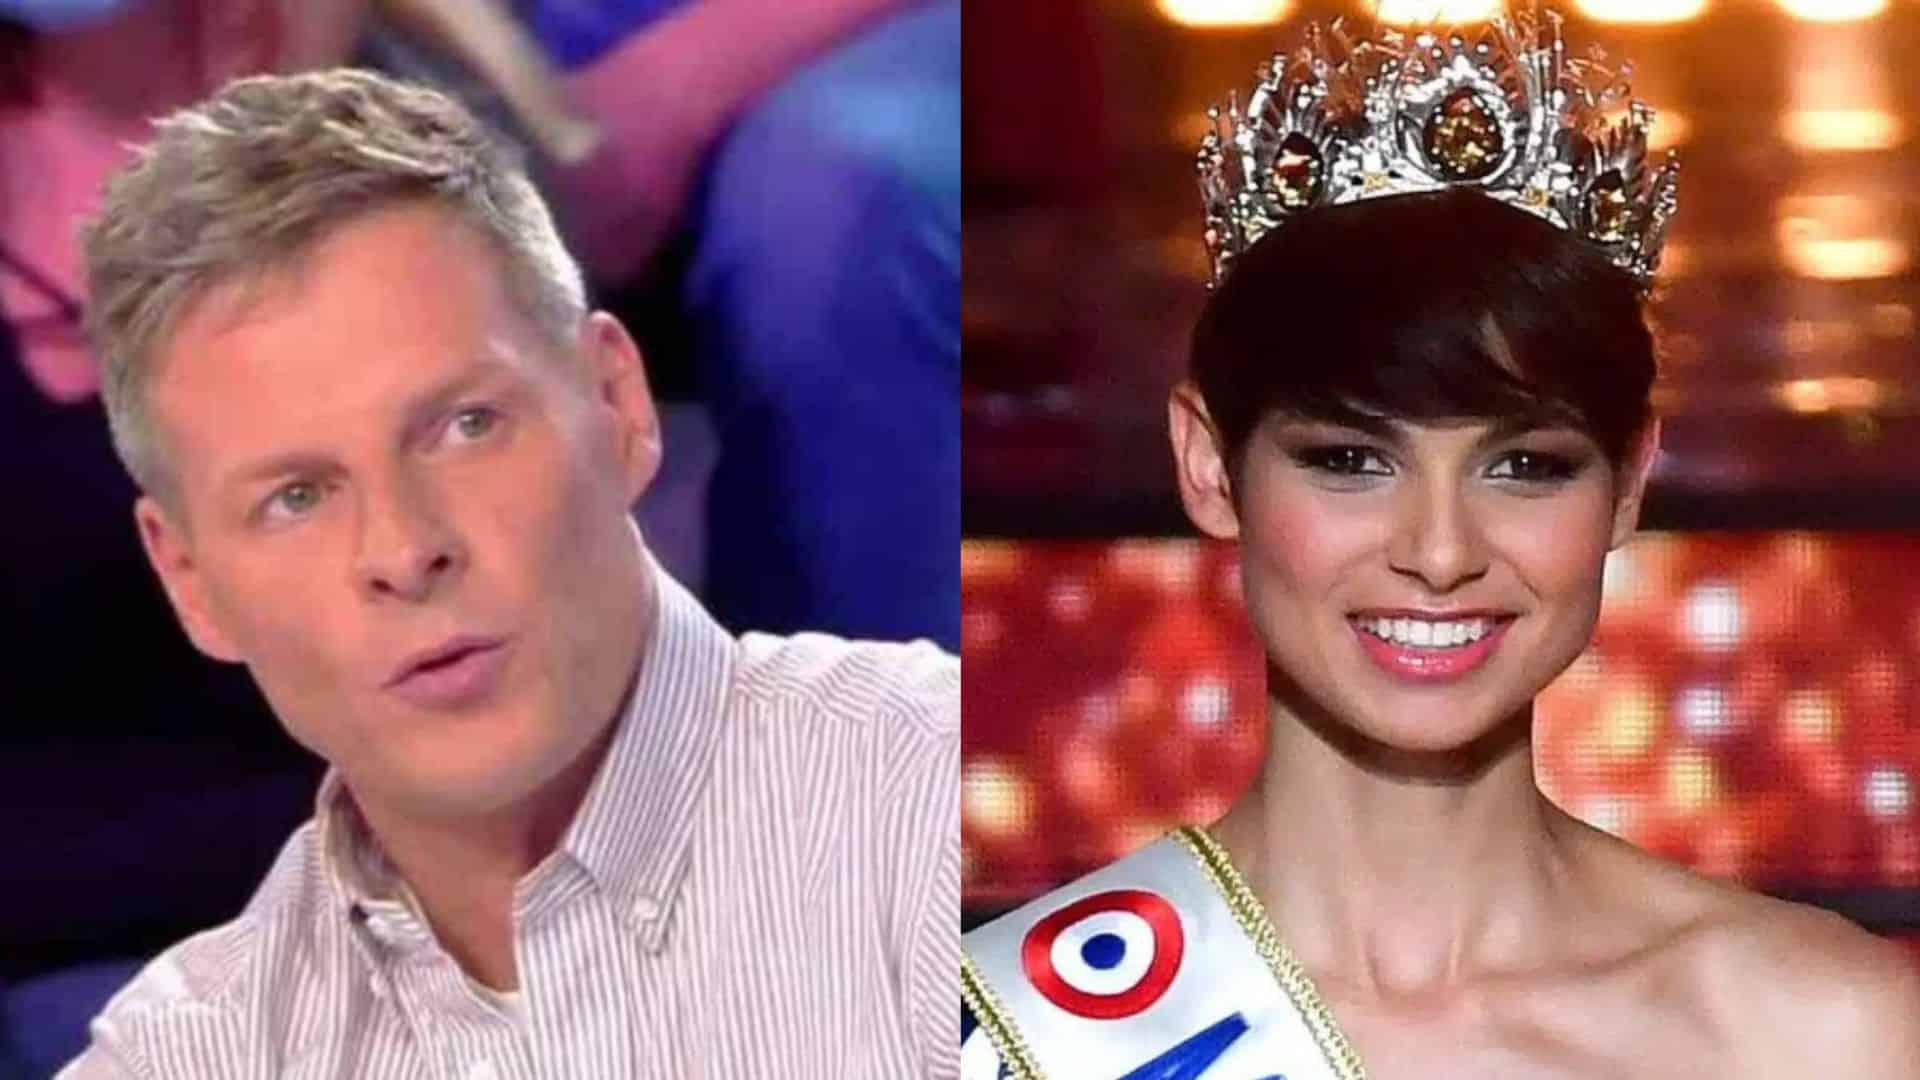 "Des juments dans une foire" : Matthieu Delormeau s'emporte contre le concours Miss France